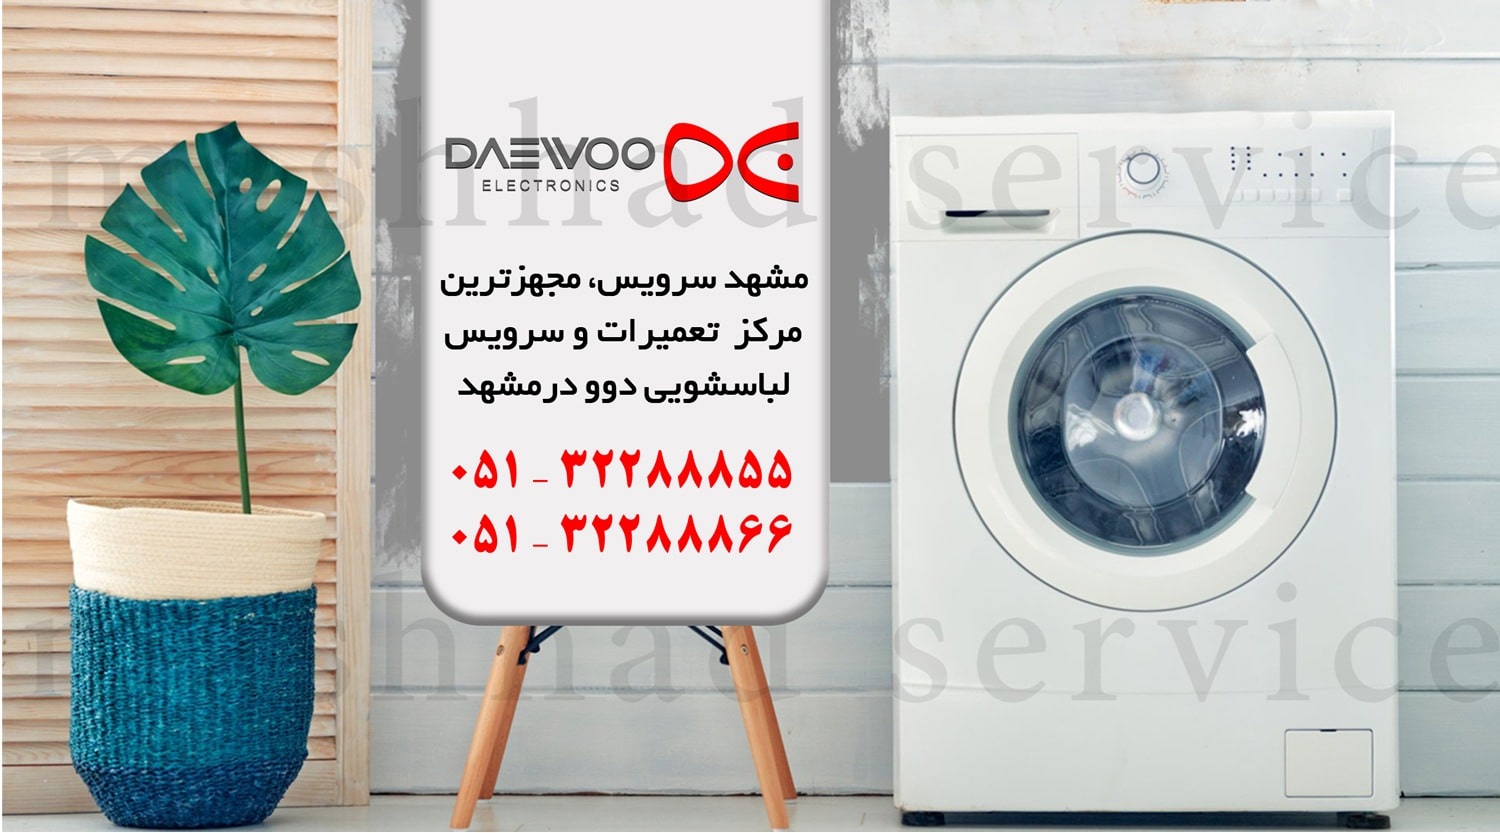  تعمیر لباسشویی daewoo در مشهد